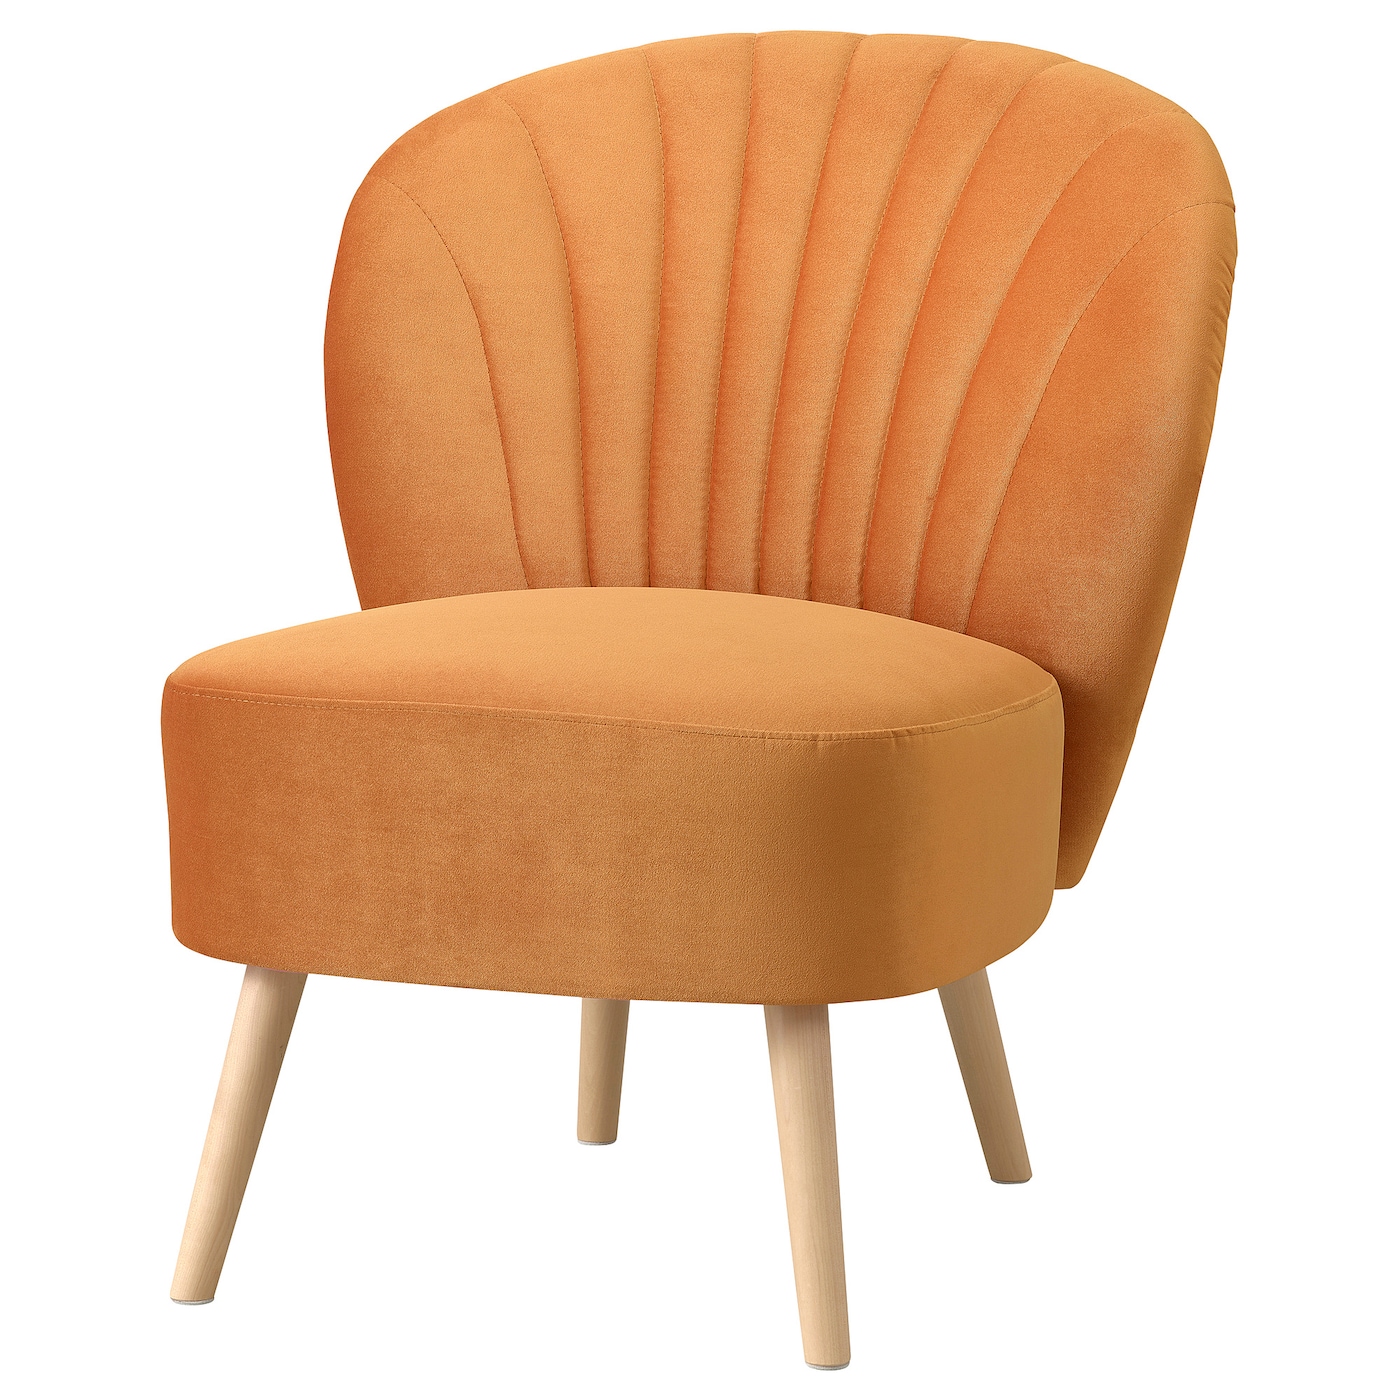 Кресло - IKEA BILLHAMN, 59х78х82 см, оранжевый, БИЛЛХАМН ИКЕА